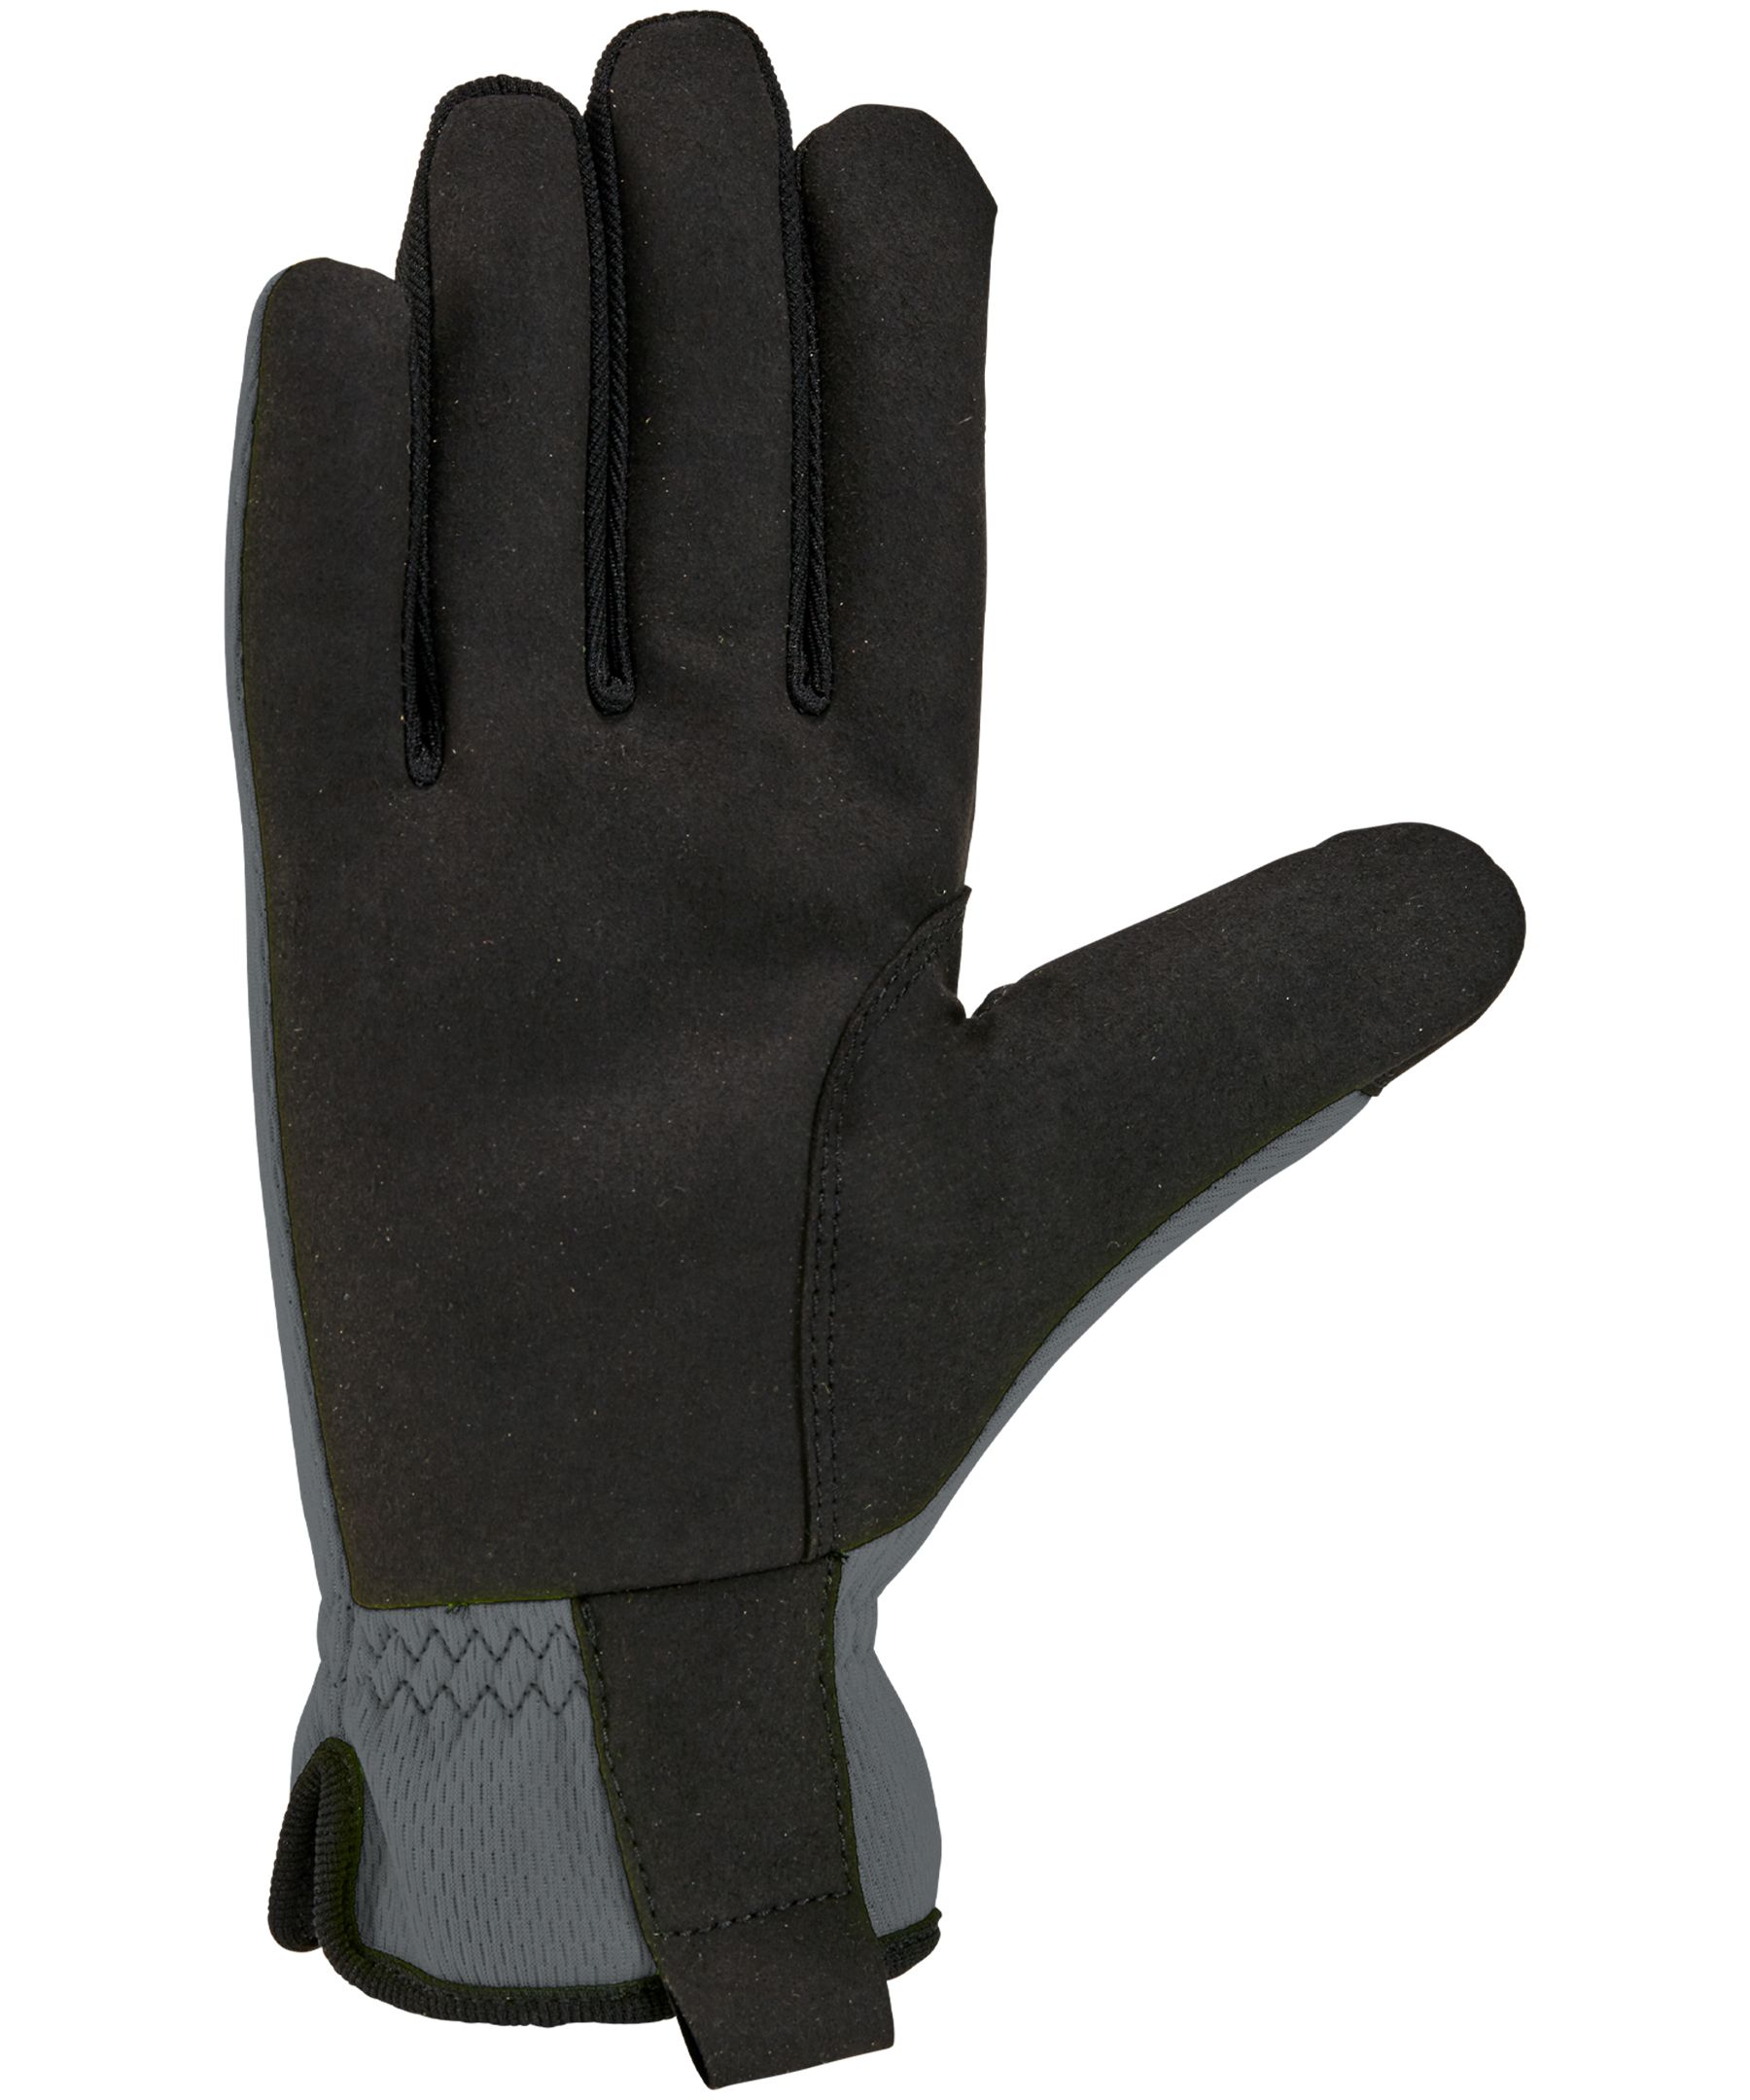 Carhartt Men's High Dexterity Open Cuff Gloves